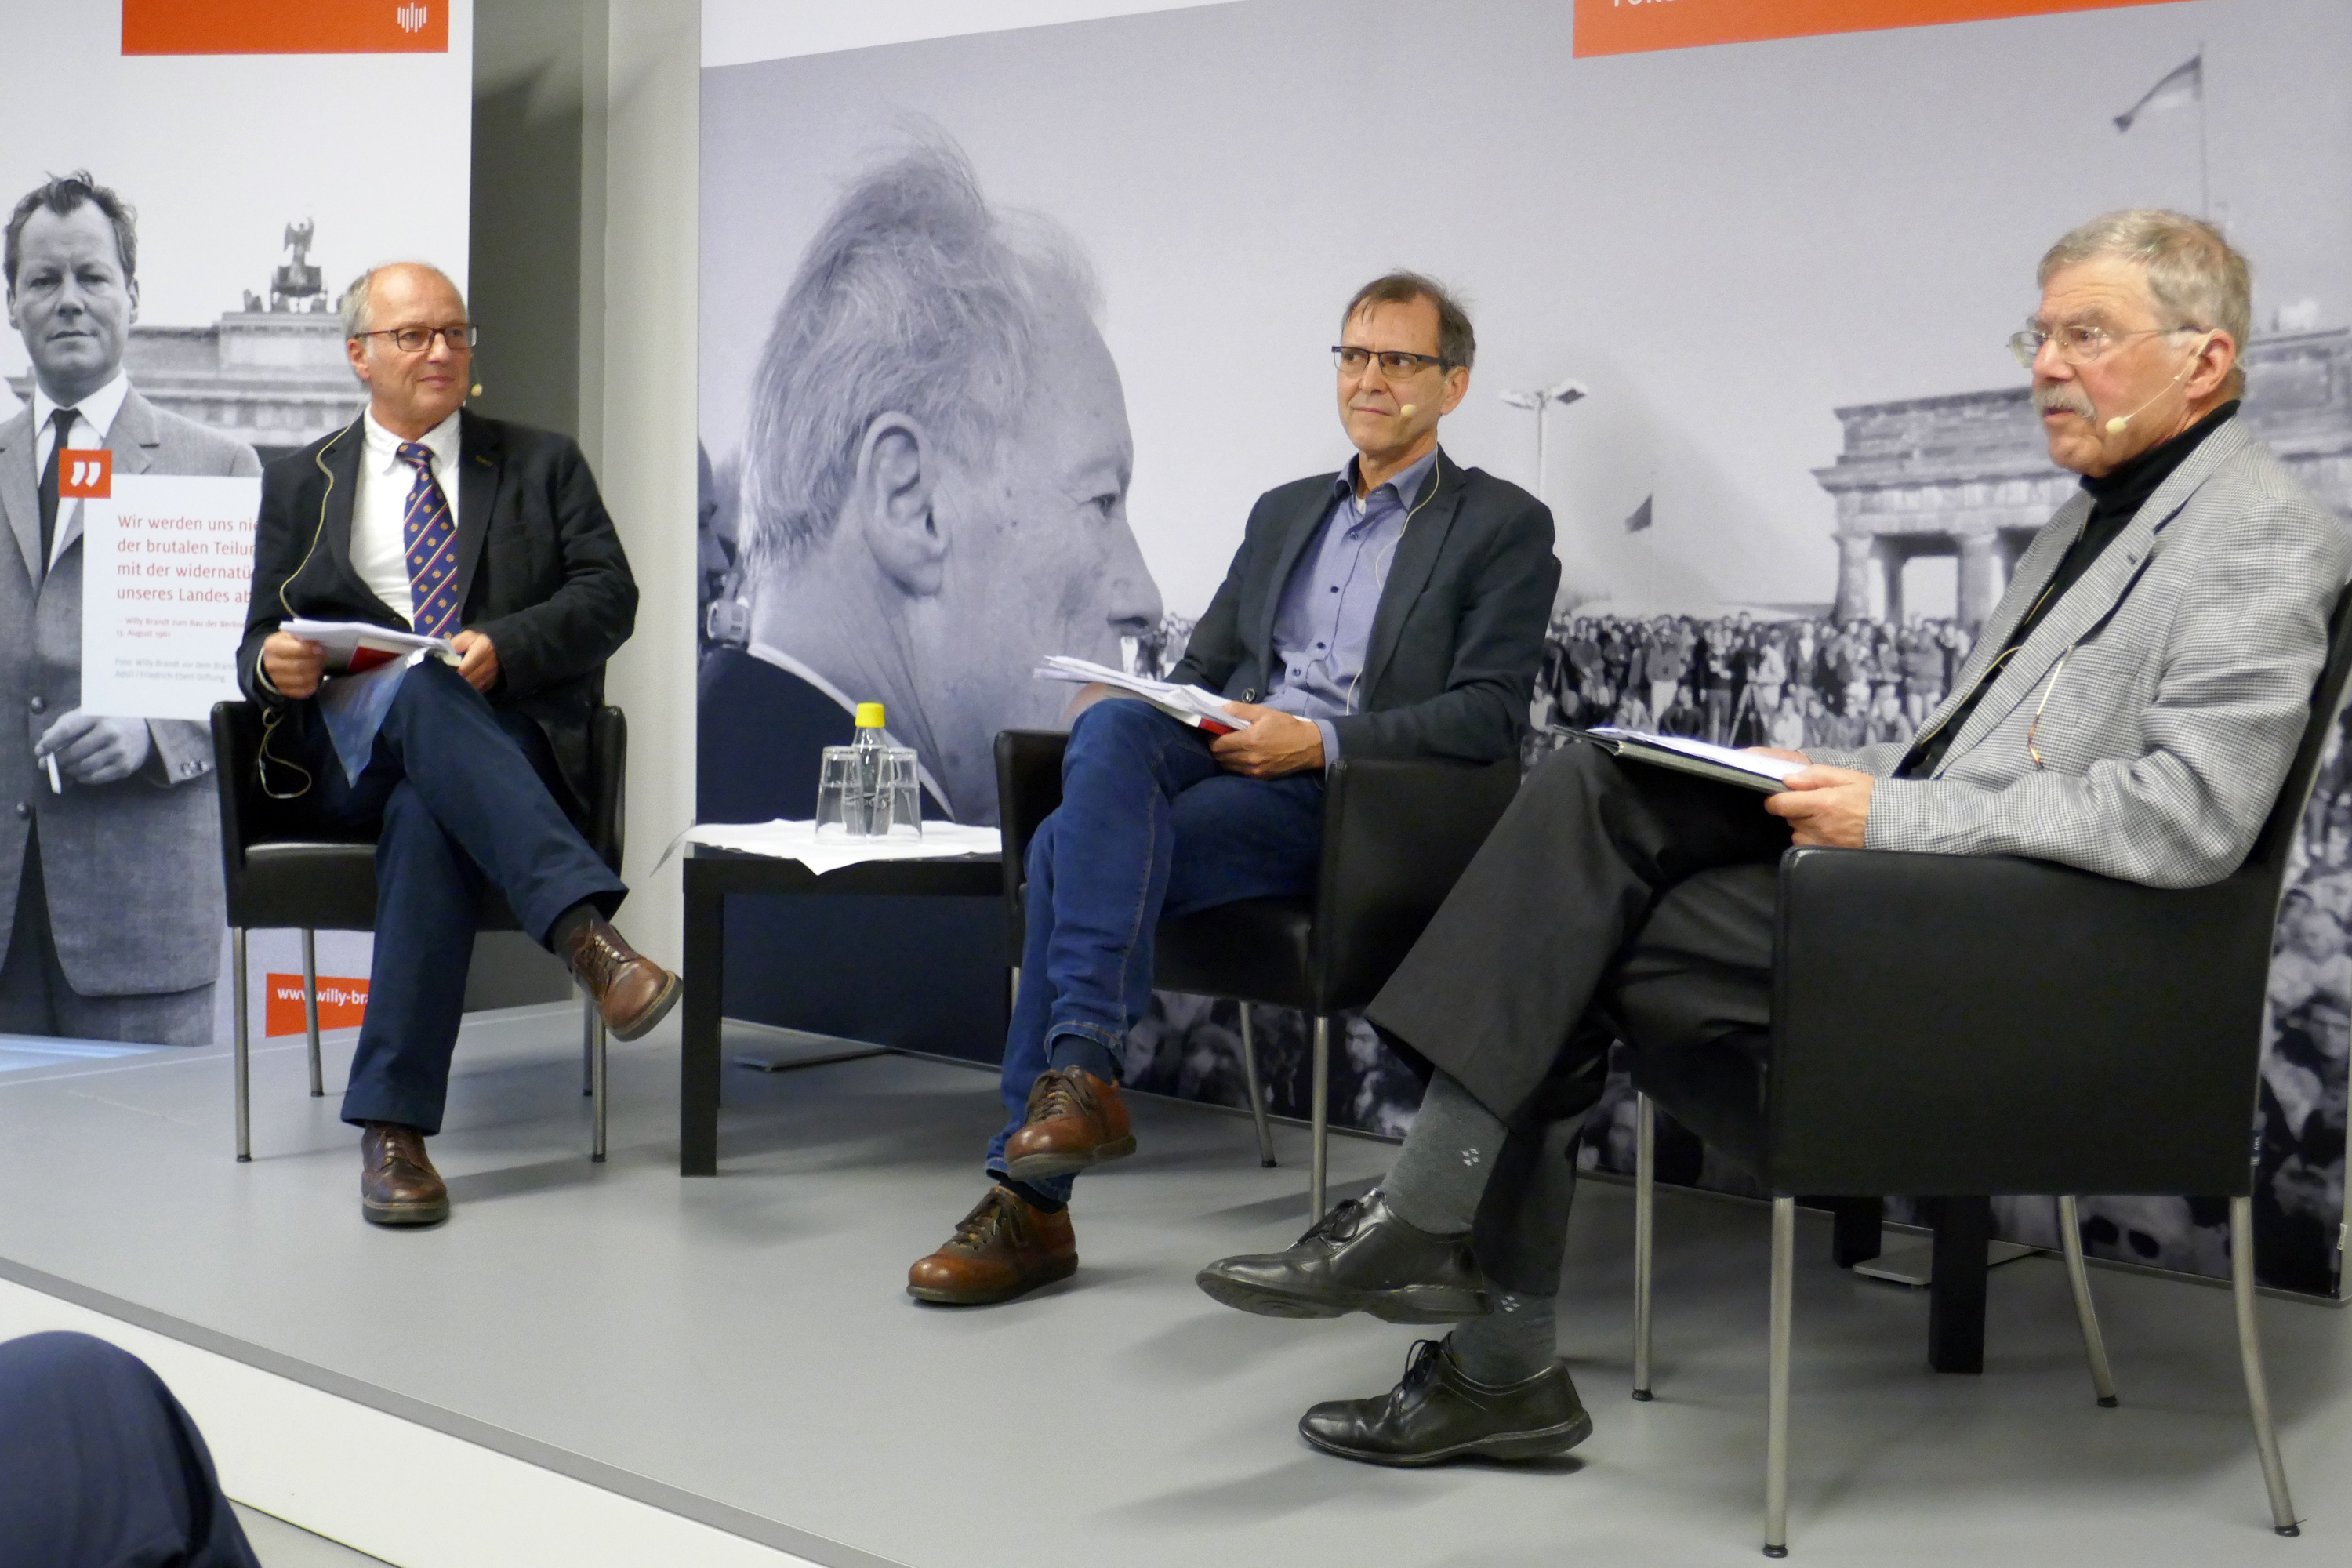 Buchvorstellung mit den Historikern Einhart Lorenz (r.) und Michael F. Scholz (l.), moderiert von Bernd Rother von der Bundeskanzler Willy Brandt Stiftung. Foto: Horb